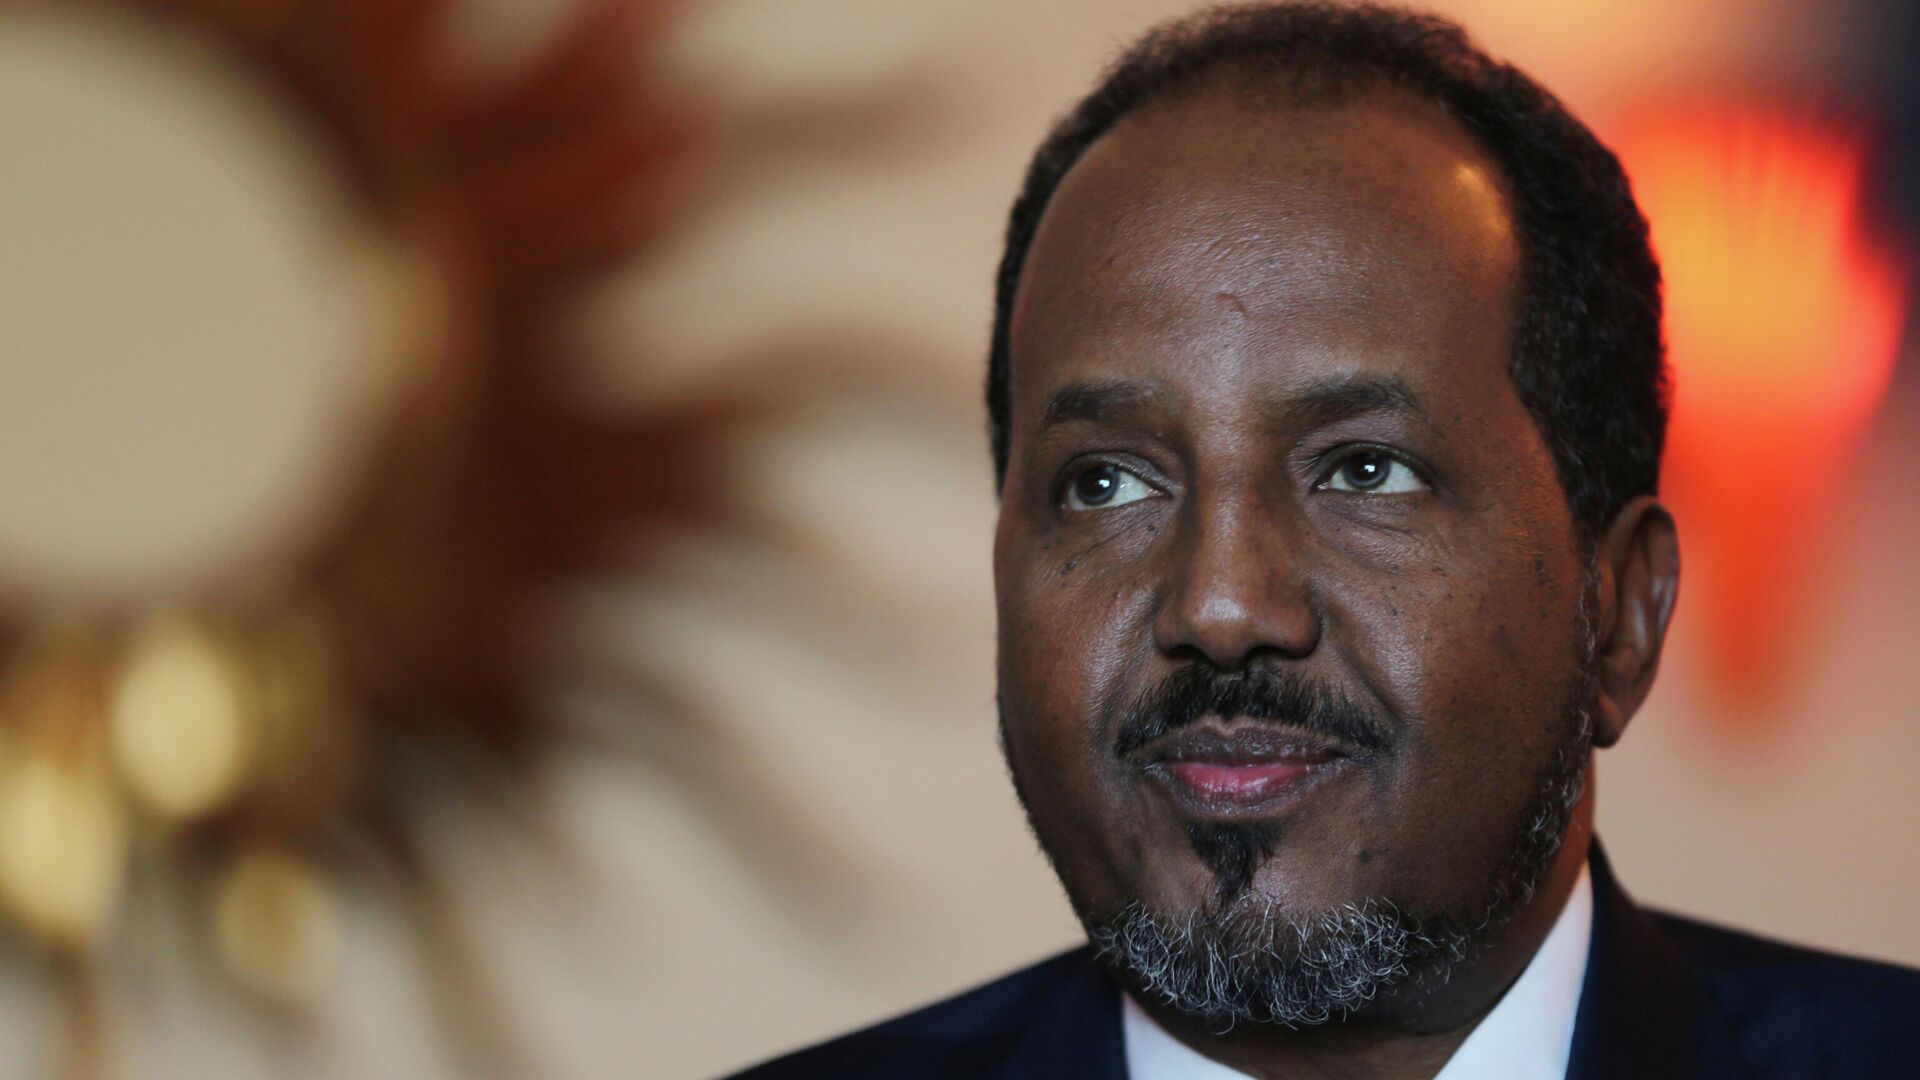 Экс-глава Сомали обвинил президента страны в нападении на свою резиденцию